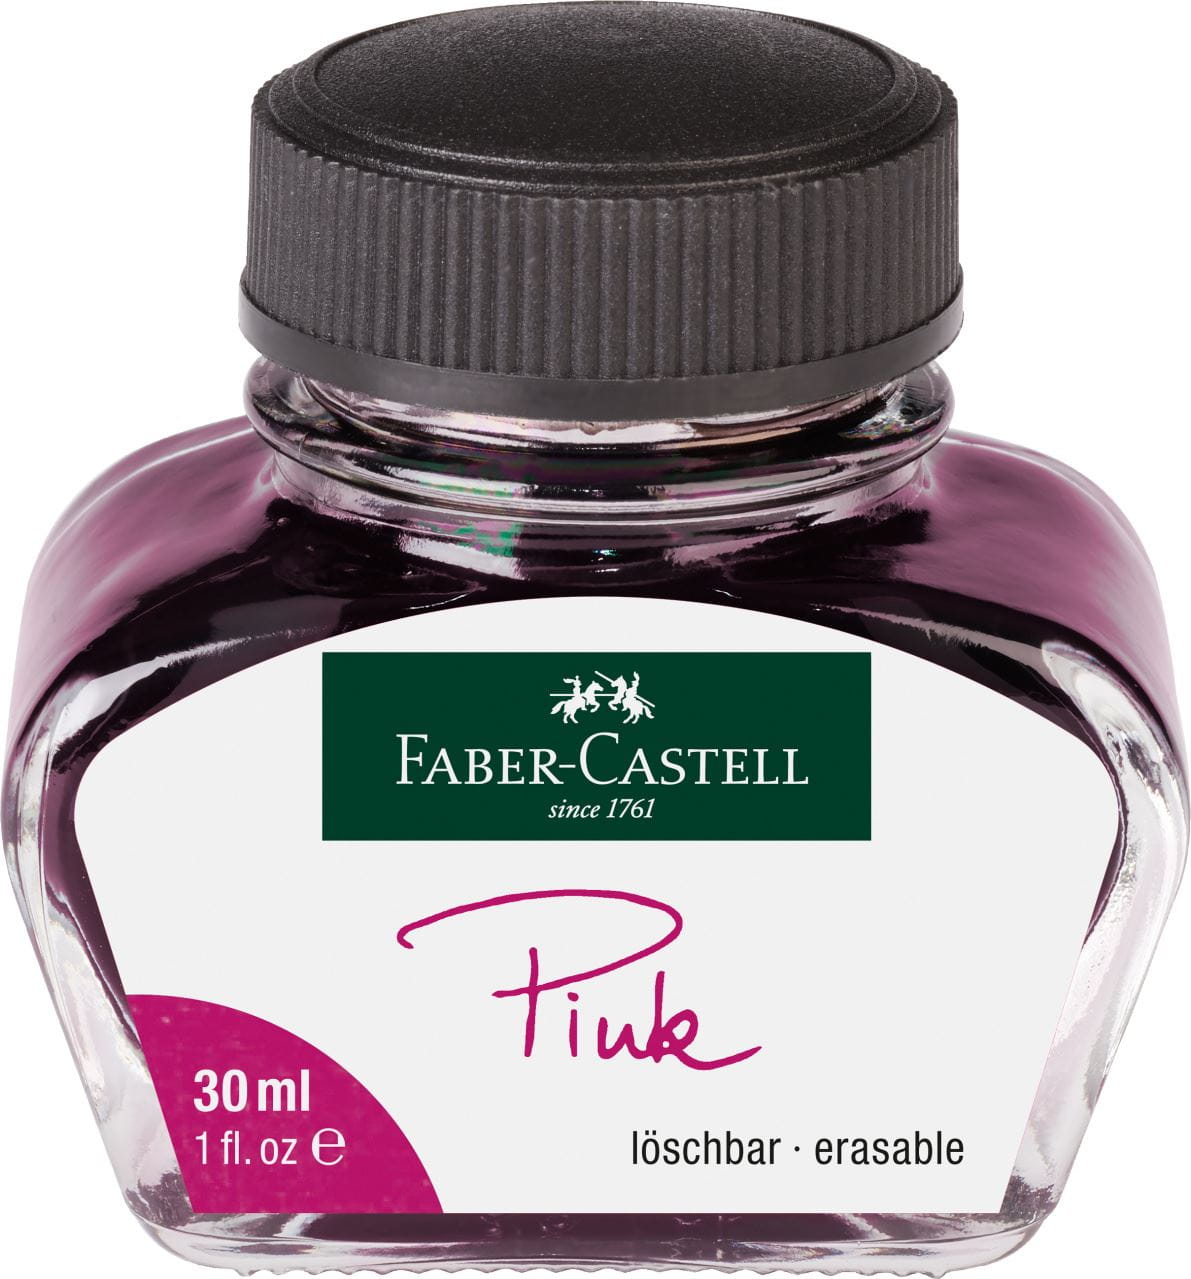 Faber-Castell - Inkoust pro plnicí pera, růžová barva